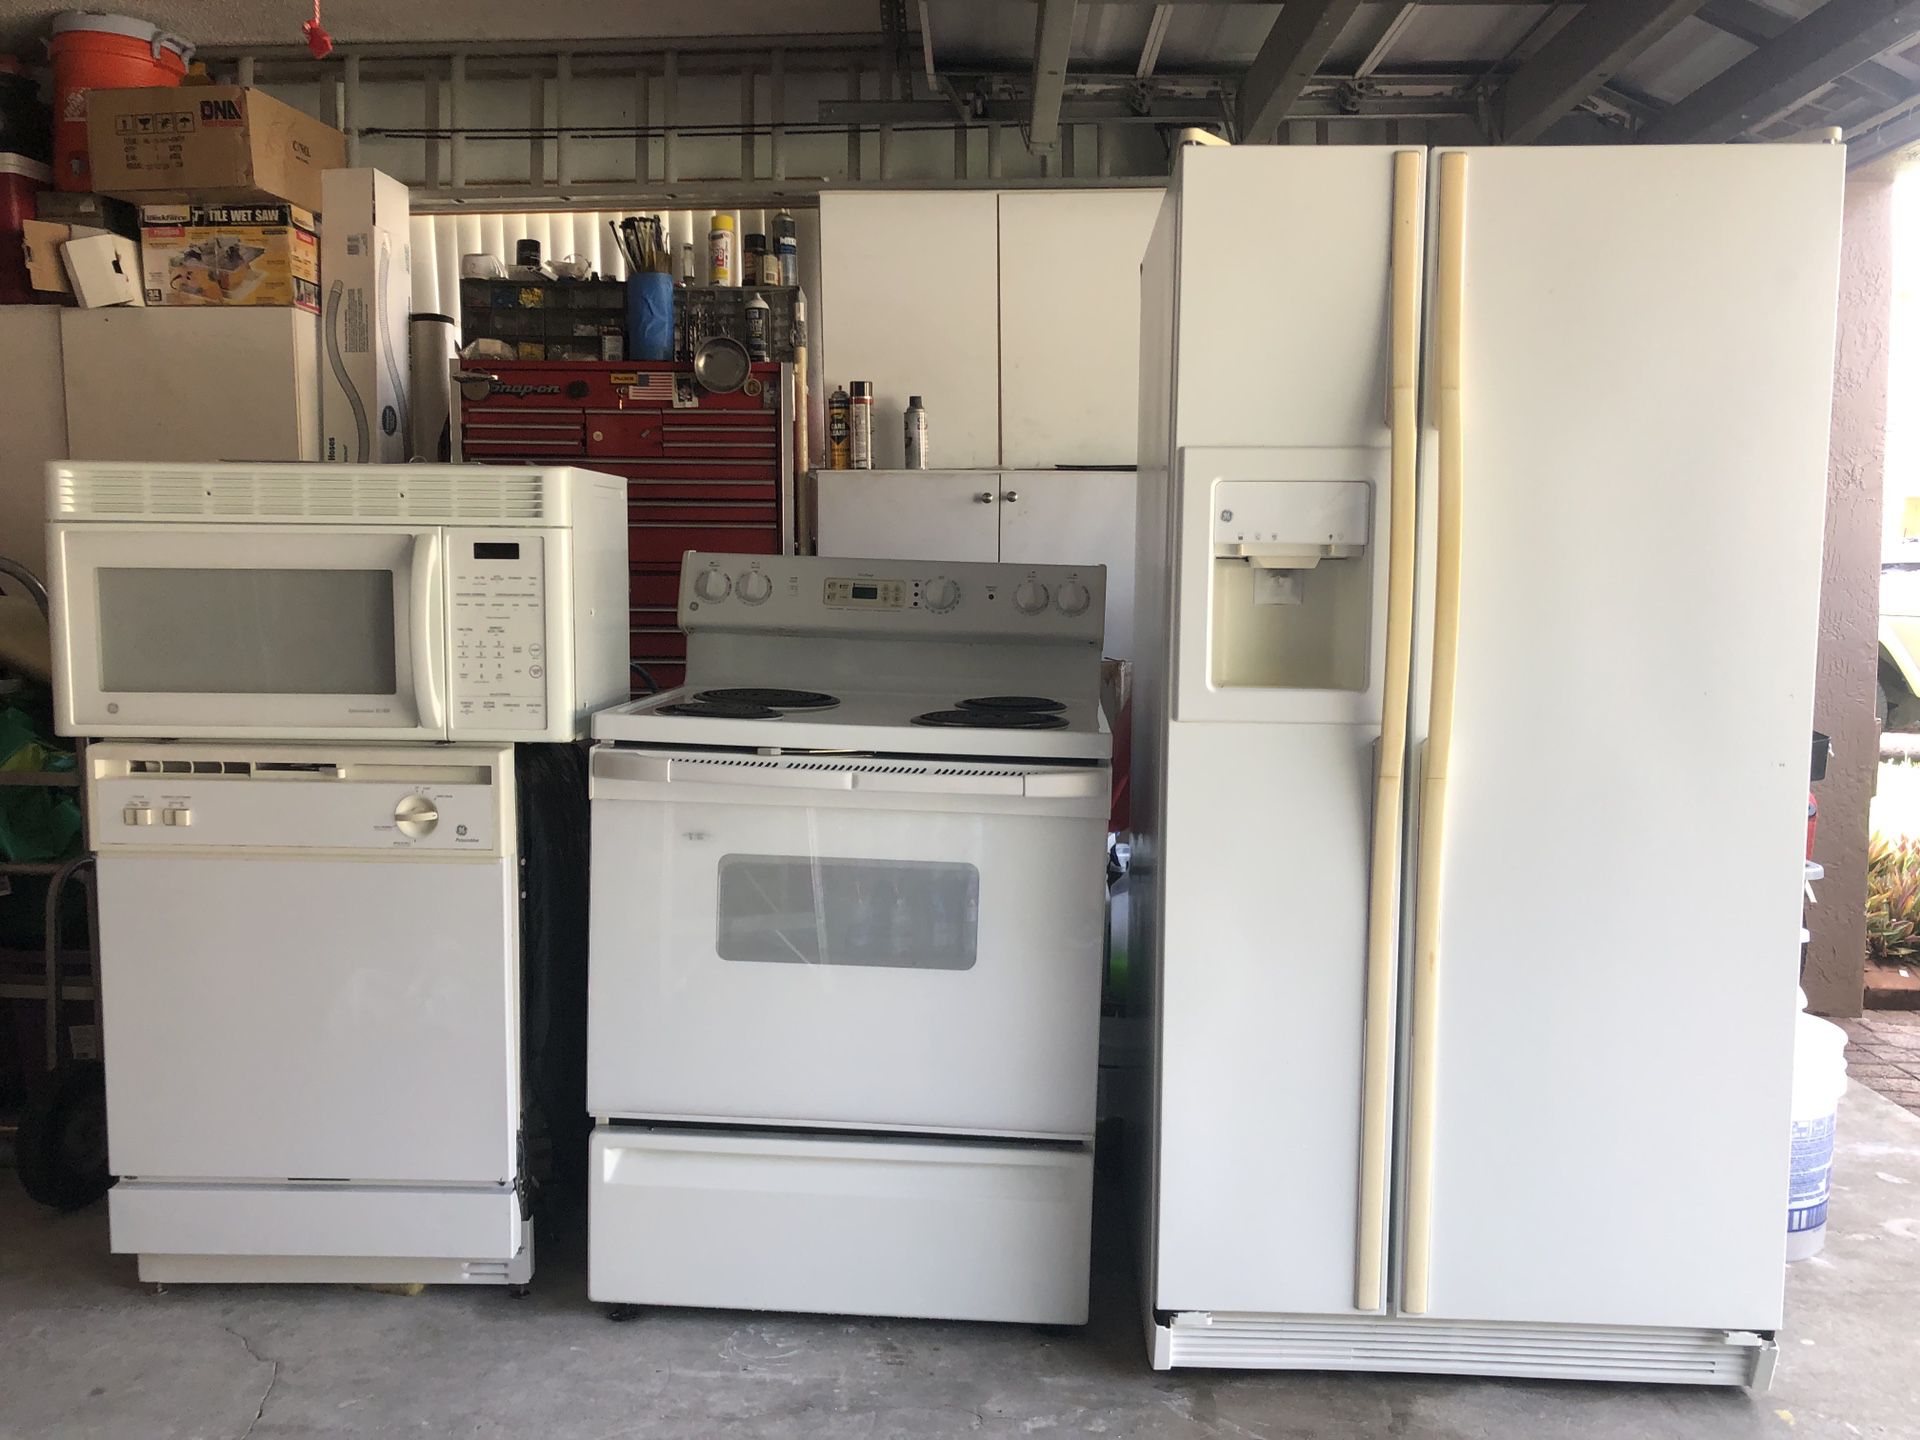 GE kitchen appliances